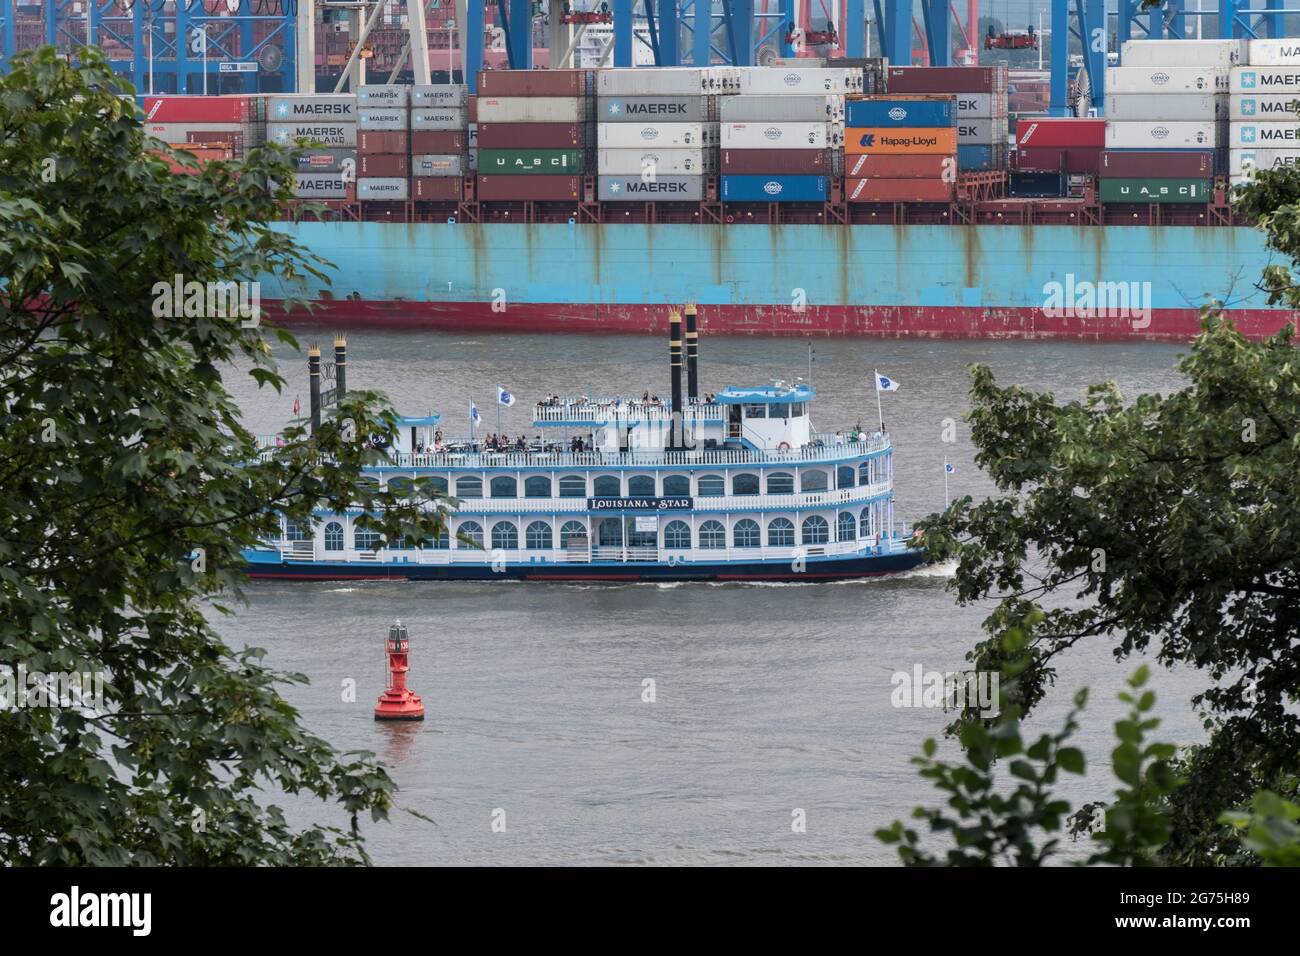 Barkasse auf der Elbe im Hamburger Hafen Foto Stock